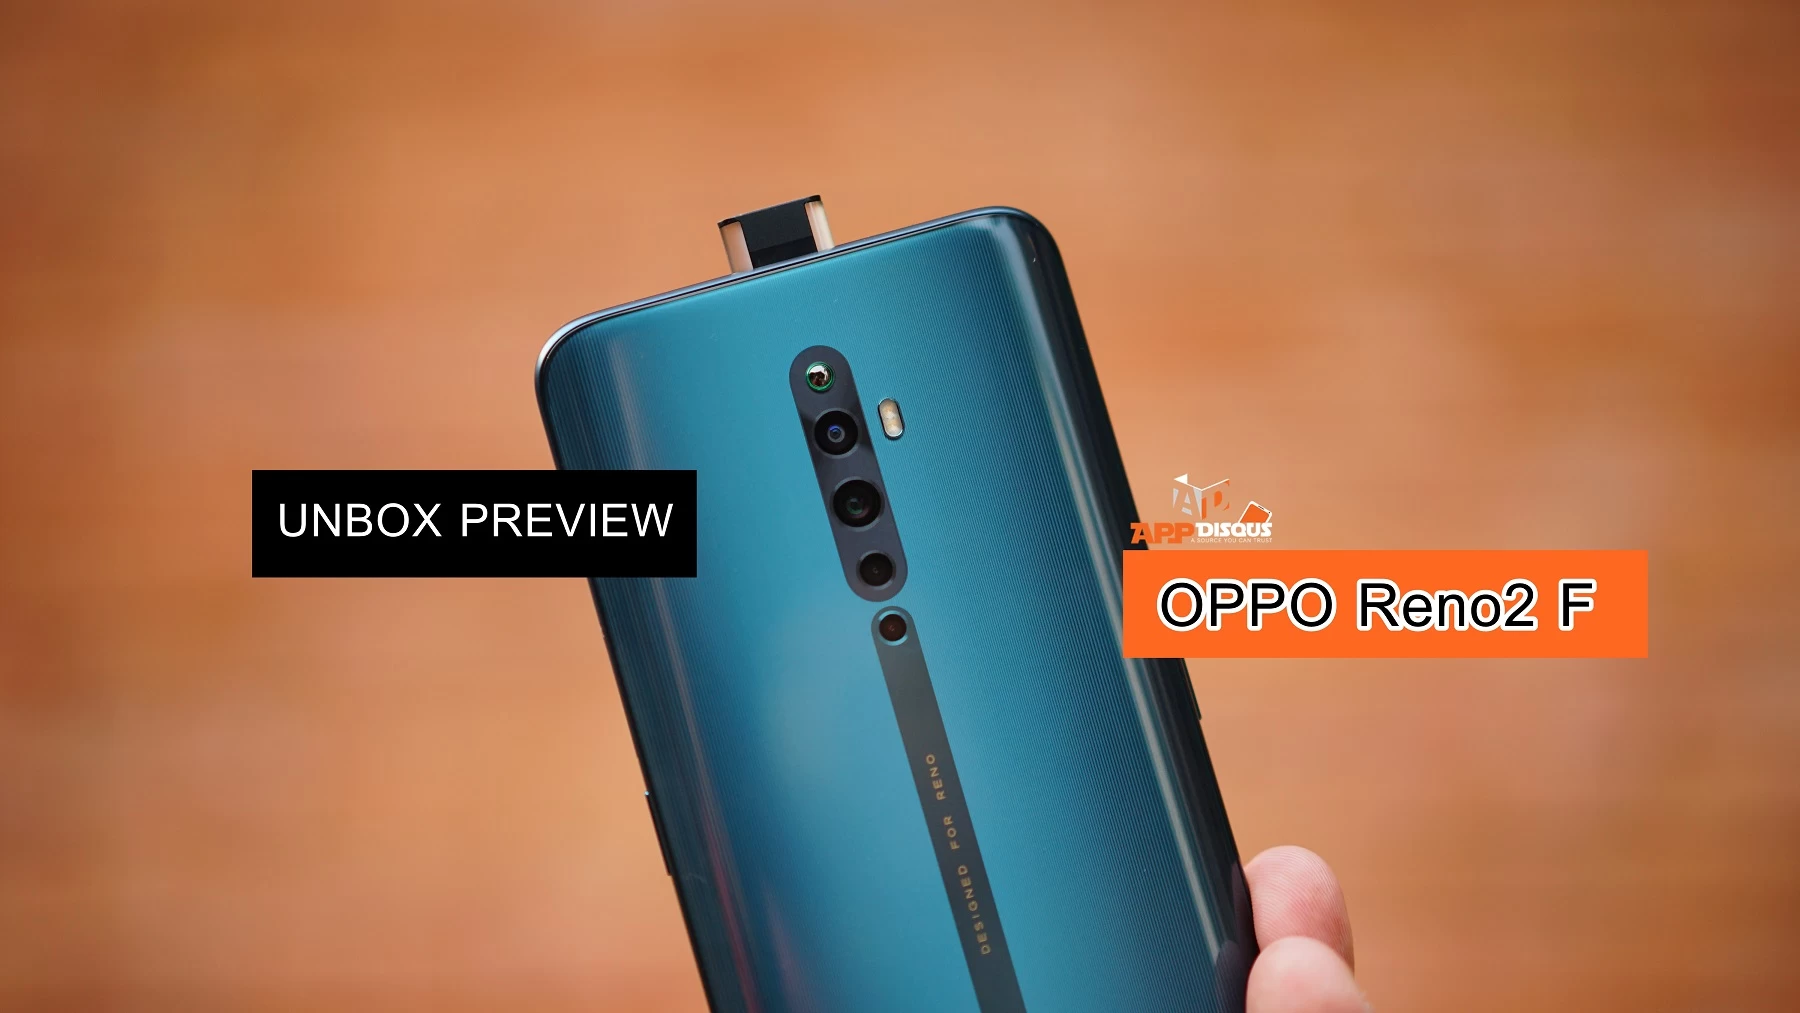 DSC00499 | Latest Preview | Unbox พรีวิว OPPO Reno2 F สมาร์ทโฟนสวย กล้องหลังสี่ และกล้องหน้าป๊อบอัพแบบมีไฟ สวยทุกมุมมอง